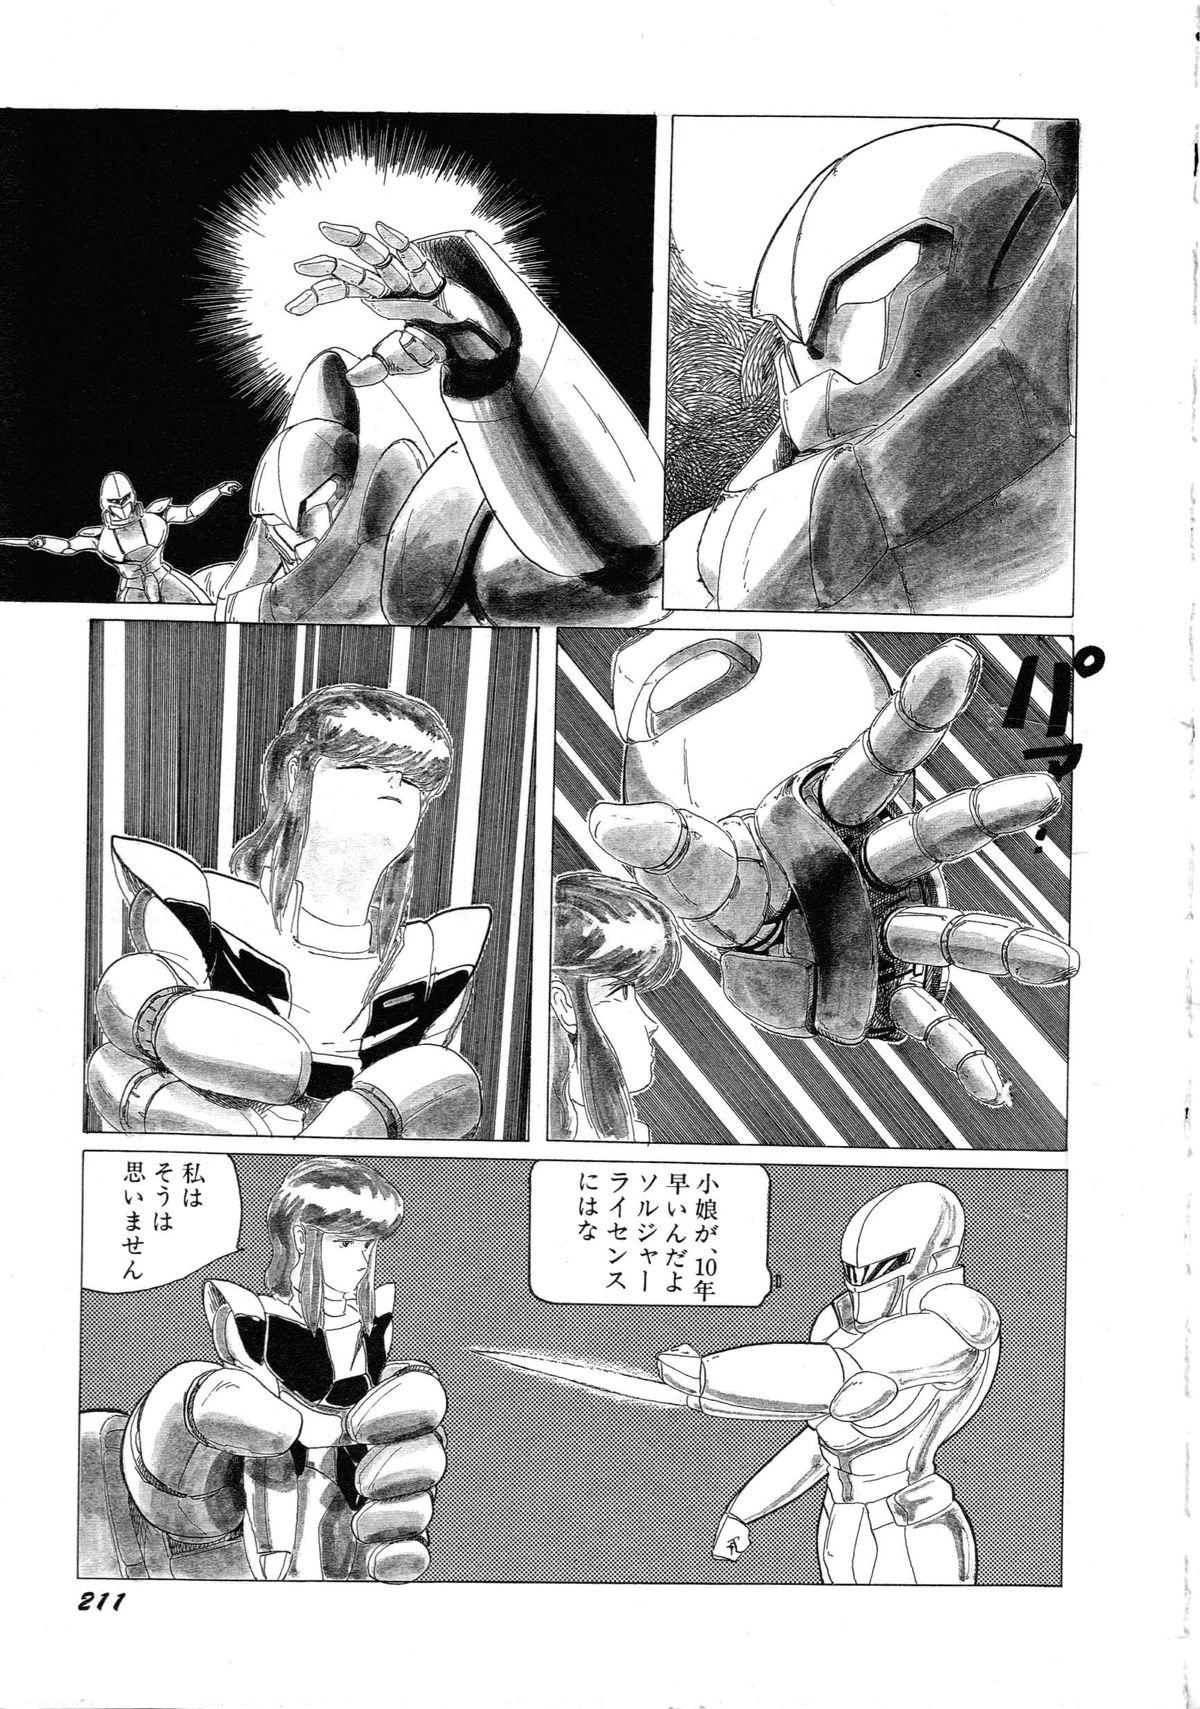 [Anthology] Robot & Bishoujo Kessakusen - Lemon People 1982-1986 214